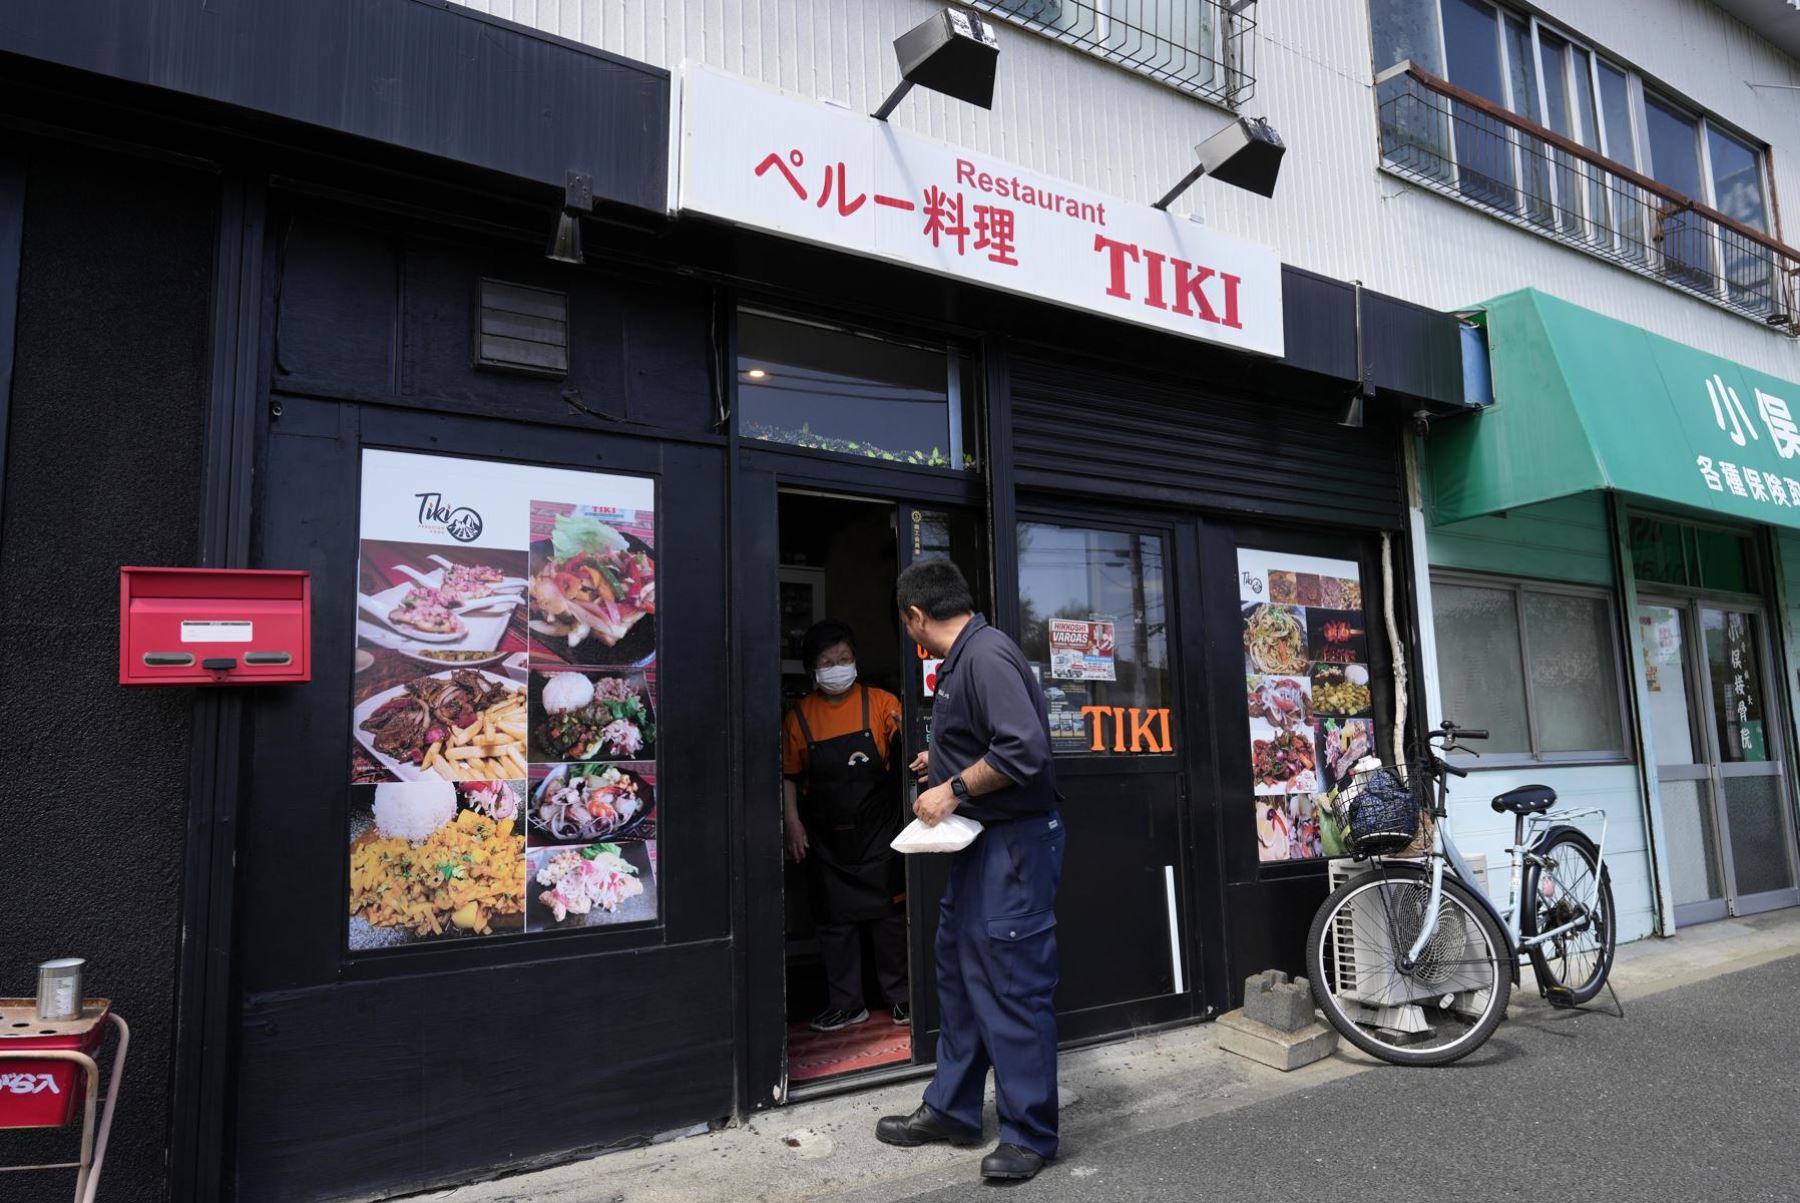 Un hombre de Perú sale del restaurante peruano Tiki después de almorzar en la ciudad de Aikawa, Prefectura de Kanagawa, cerca de Tokio, Japón, Foto: EFE